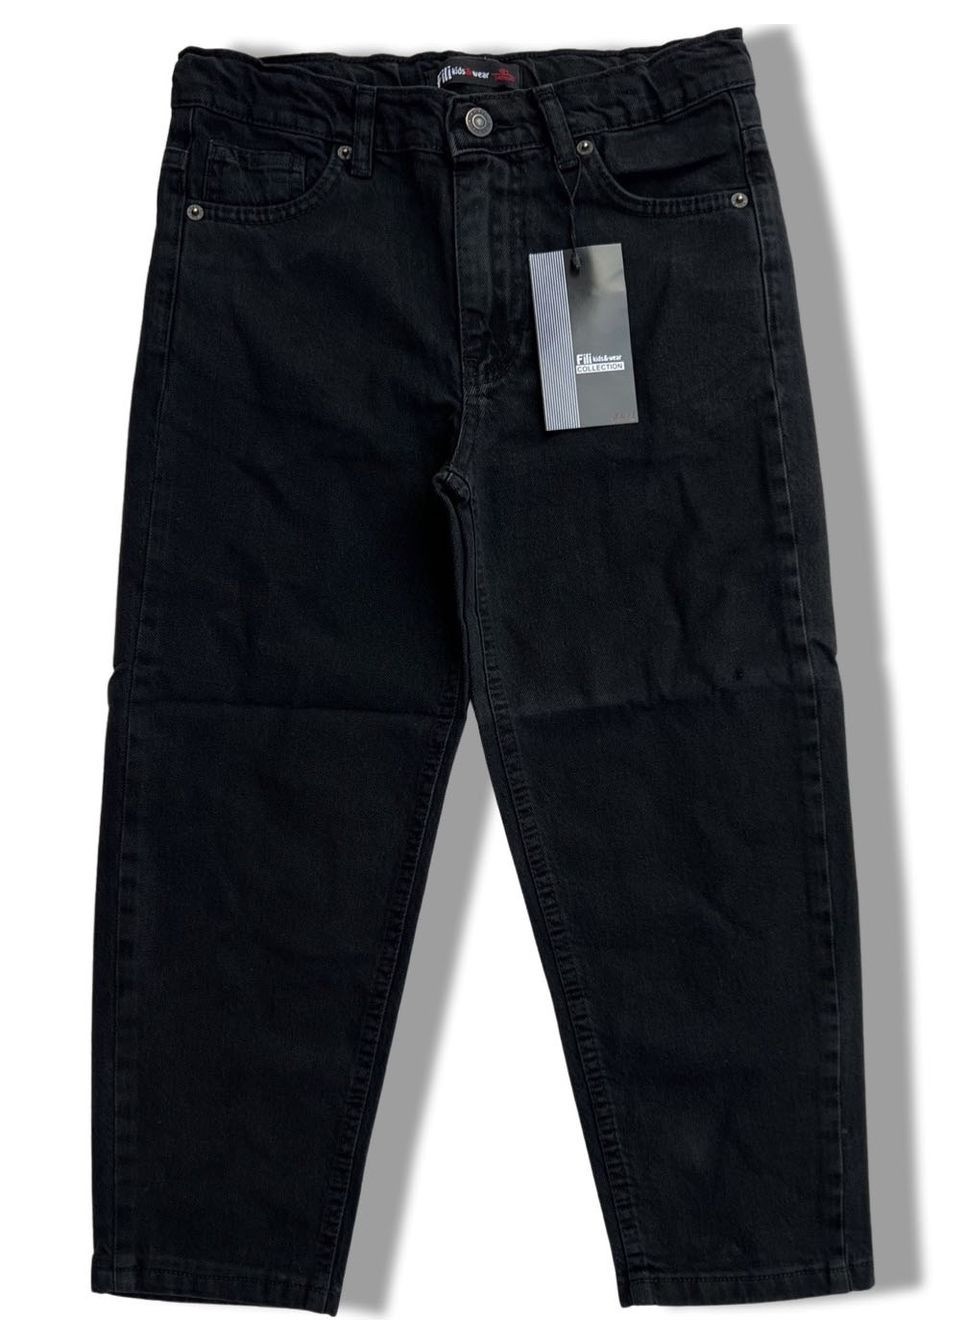 Черные демисезонные джинсы мом для девочки fili kids синие 1001 164 см No Brand